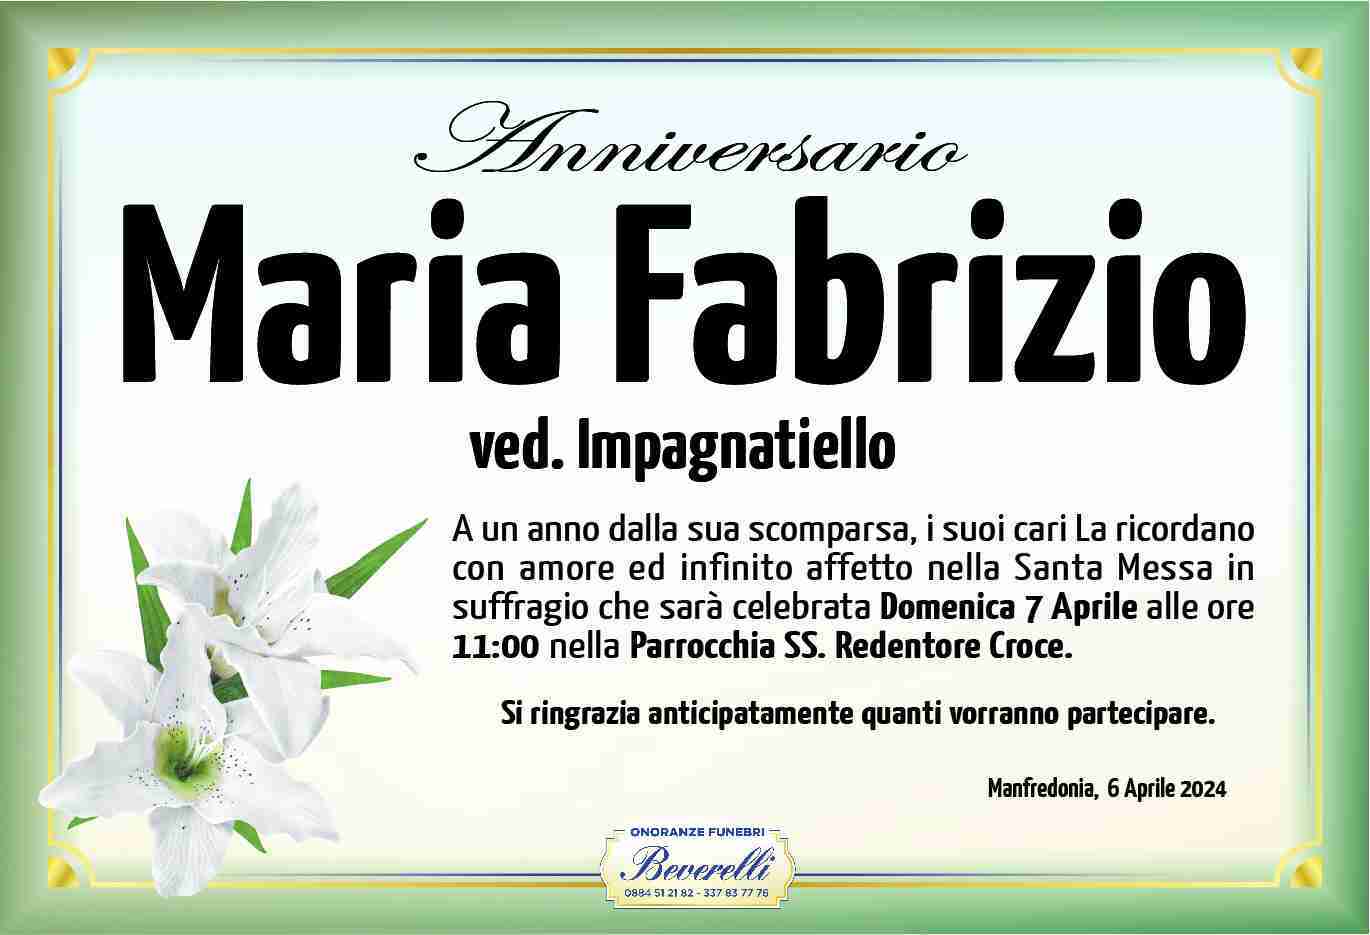 Maria Fabrizio